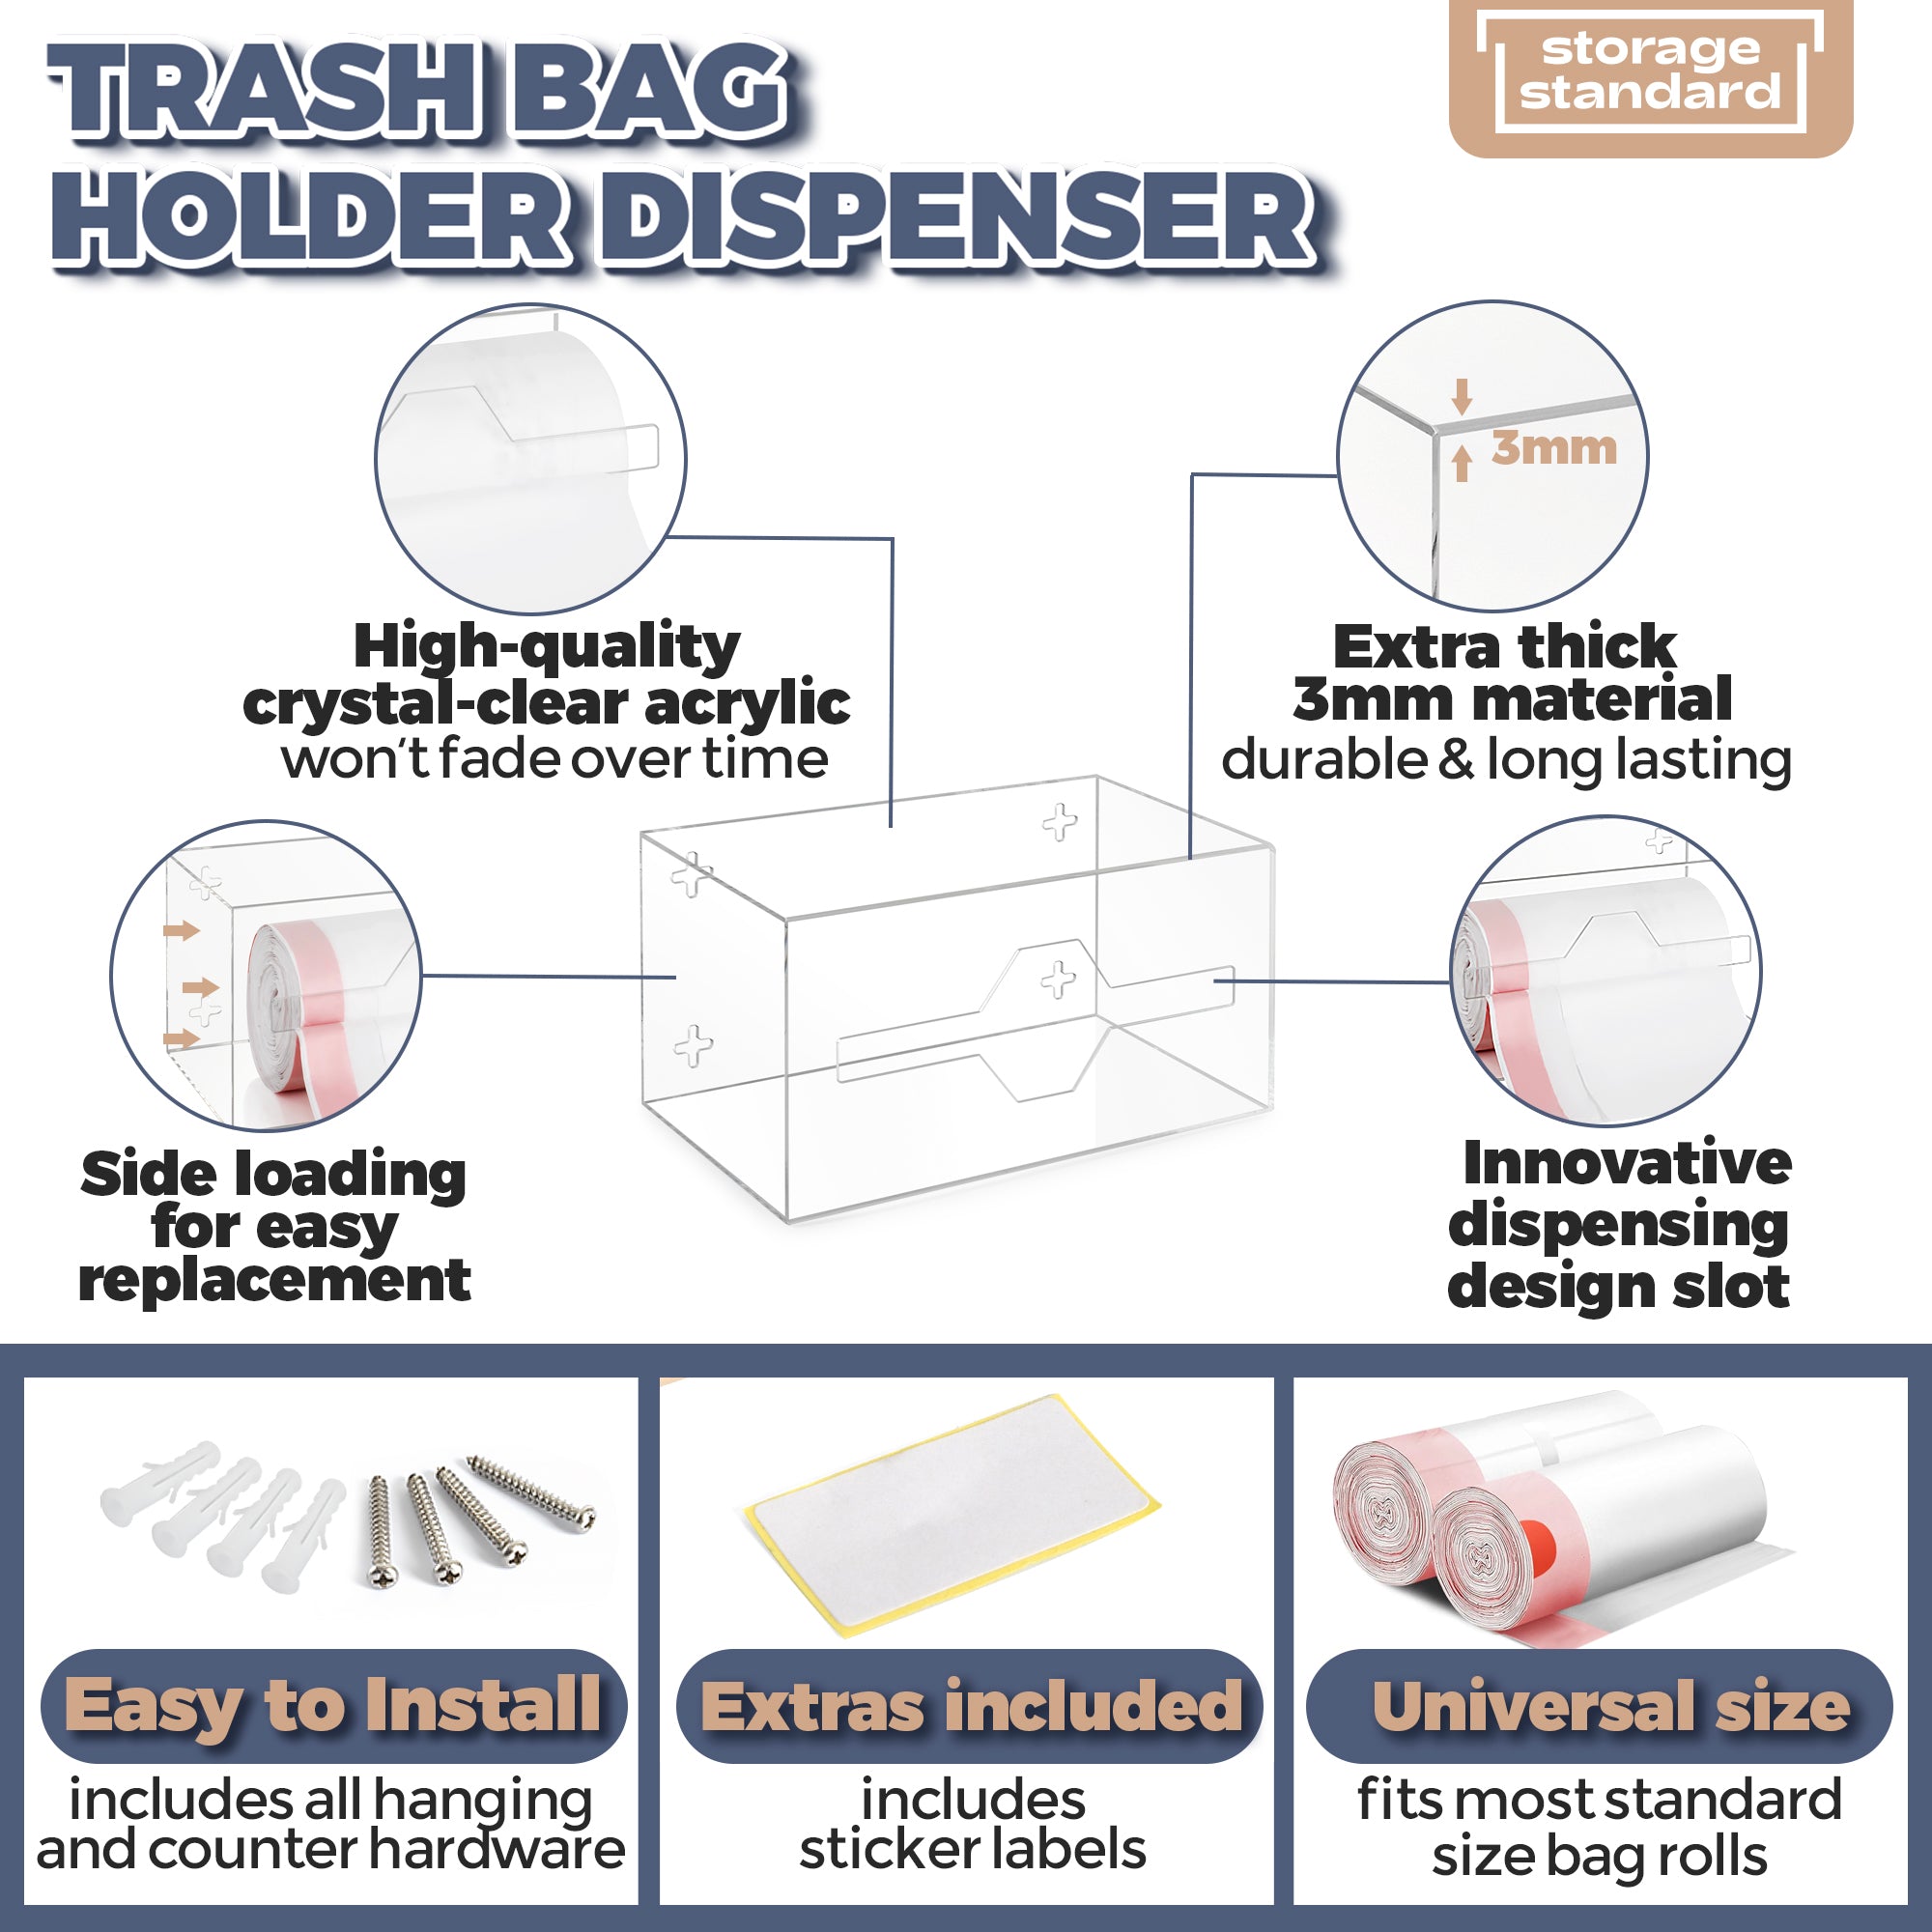 Storage Standard Trash Bag Holder Dispenser - Acrylic Trash Bag Dispenser Roll Holder, Garbage Bag Holder for Cabinet, Garbage Bag Dispenser Under Sink - Trash Bag Organizer for Home or Shops - Small